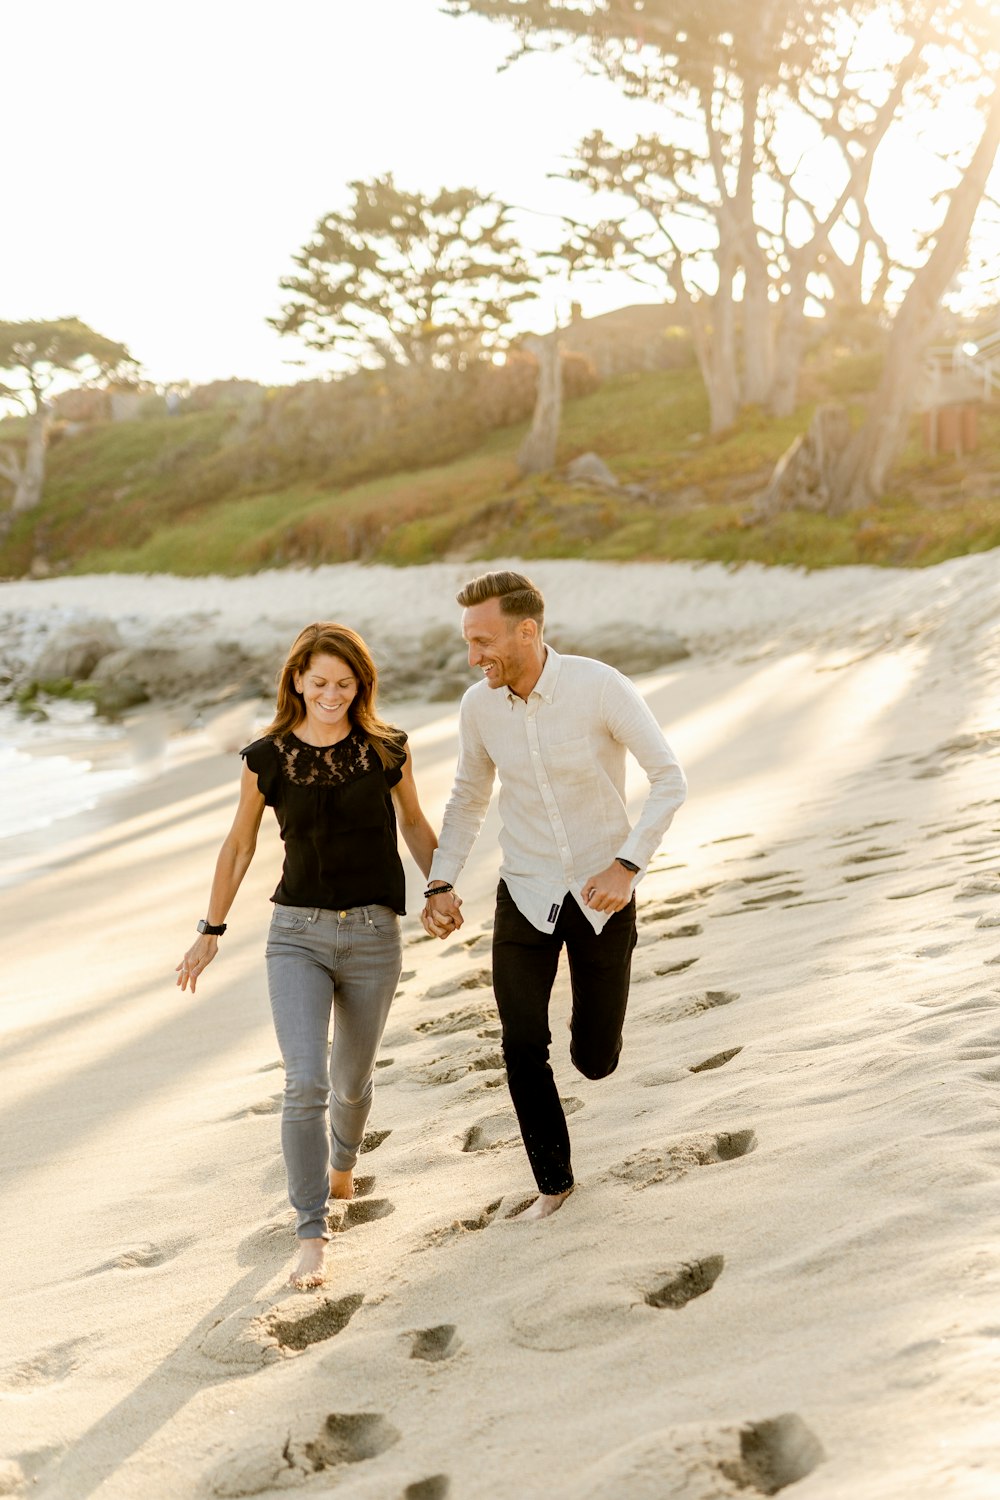 하얀 드레스 셔츠를 입은 남자와 낮 동안 해변을 걷고 있는 검은 드레스를 입은 여자